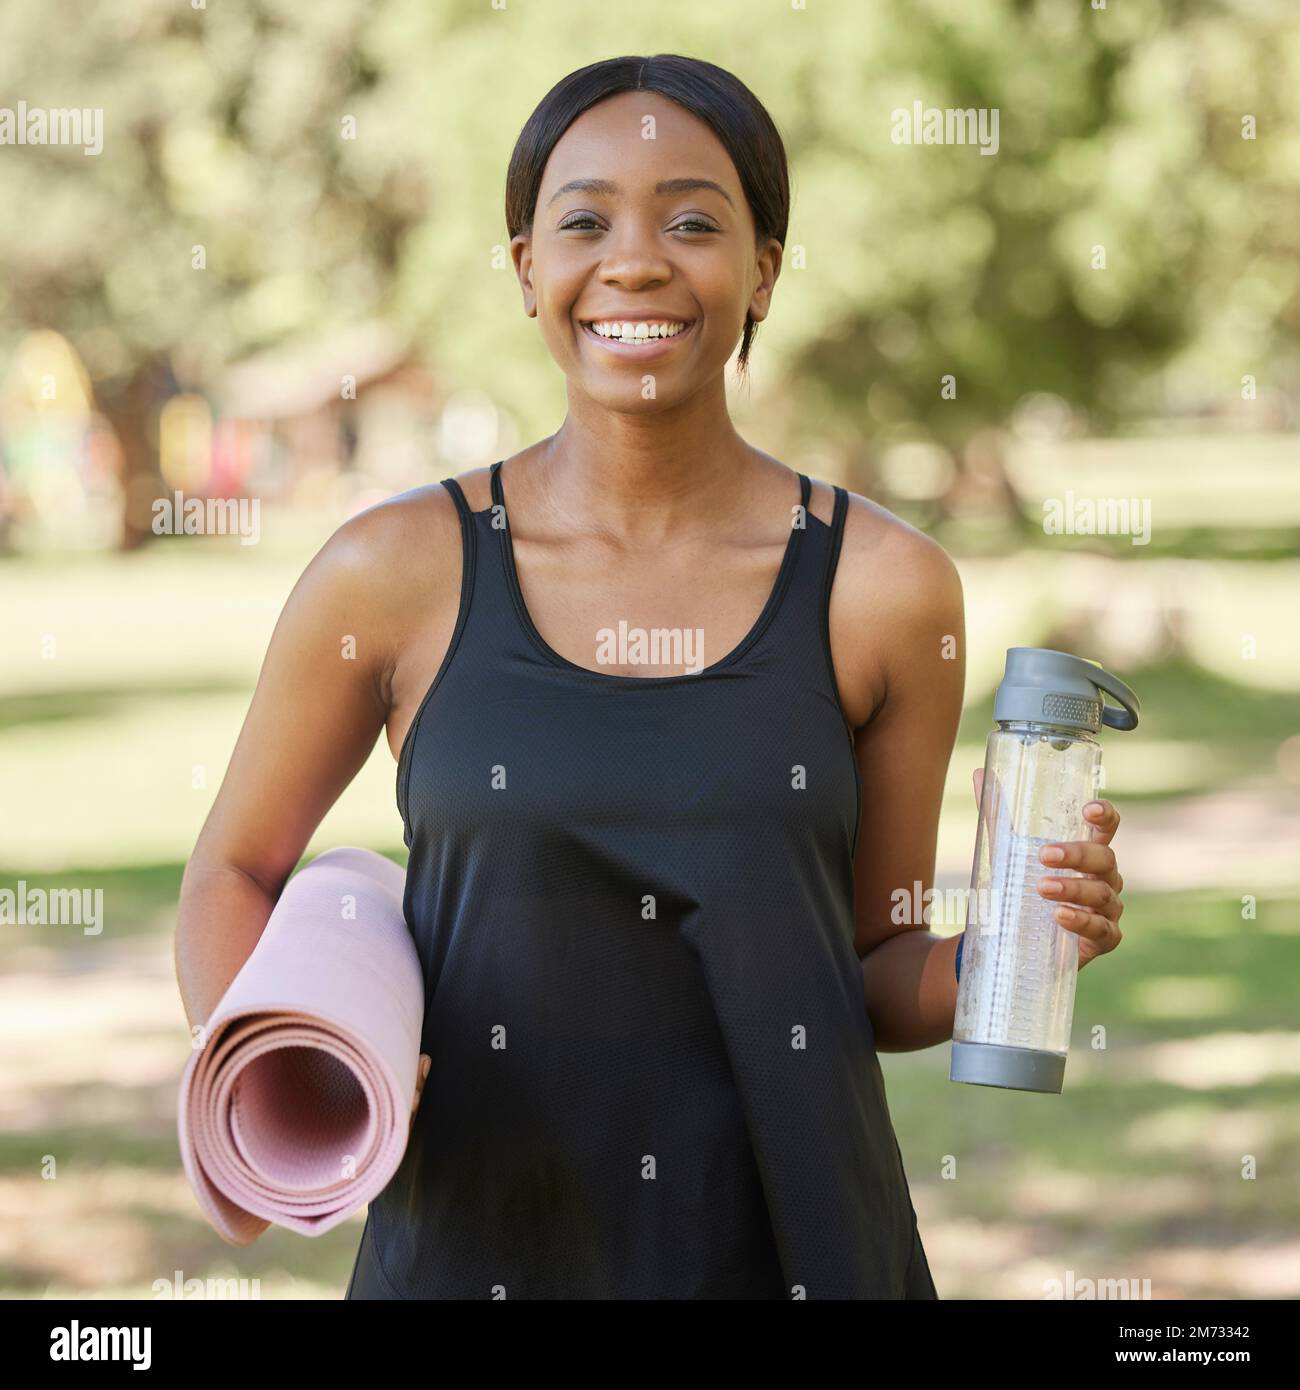 Porträt einer schwarzen Frau im Park mit Yogamatte und Wasserflasche, Lächeln in der Natur für Gesundheit und Fitness. Übung, Zen und Yoga, glückliche Frau Stockfoto